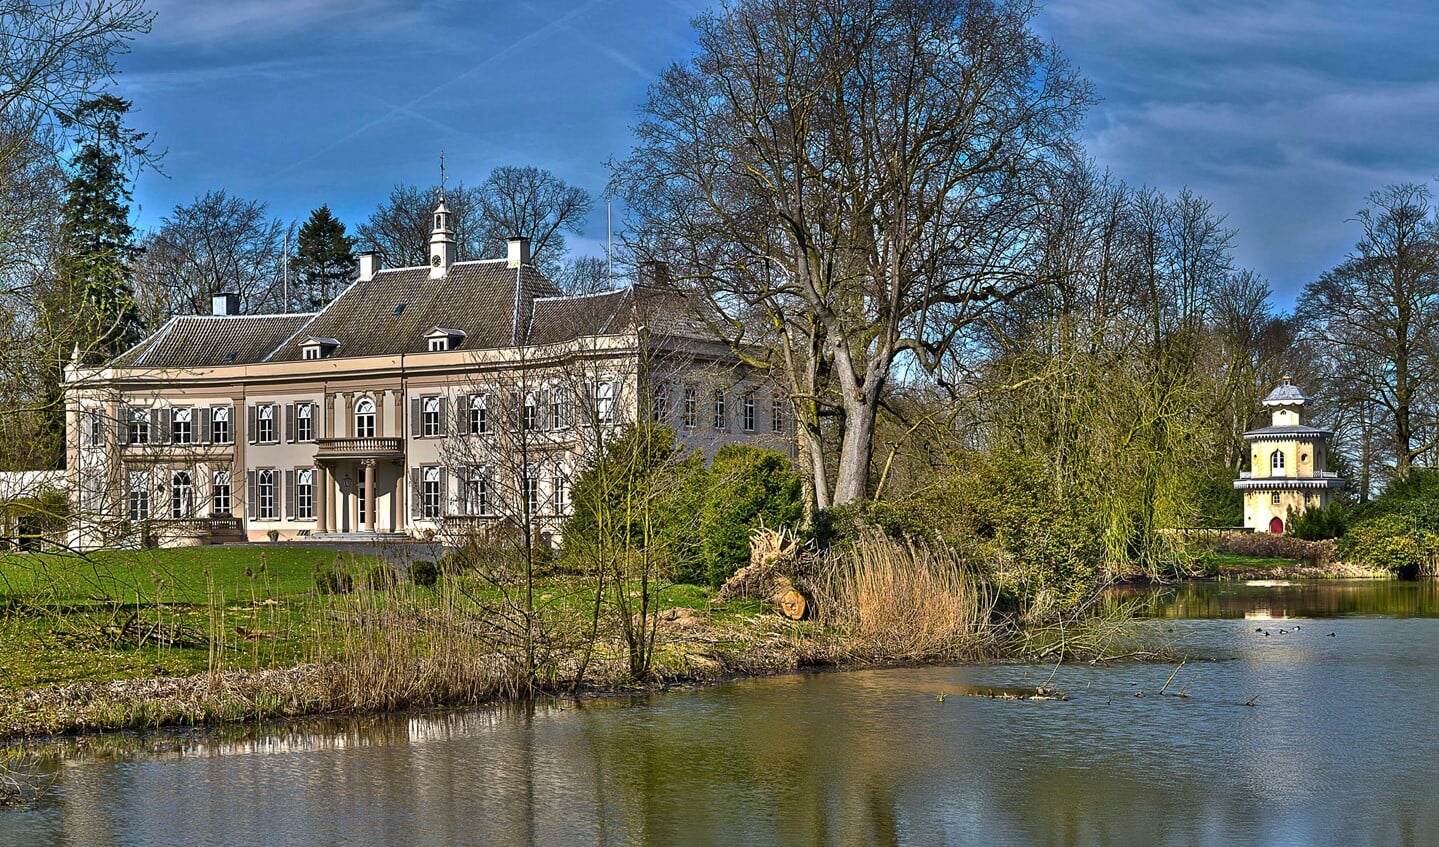 De historische buitenplaats Huis Landfort in Megchelen moet in oude luister worden hersteld. Foto: Henk van Raaij